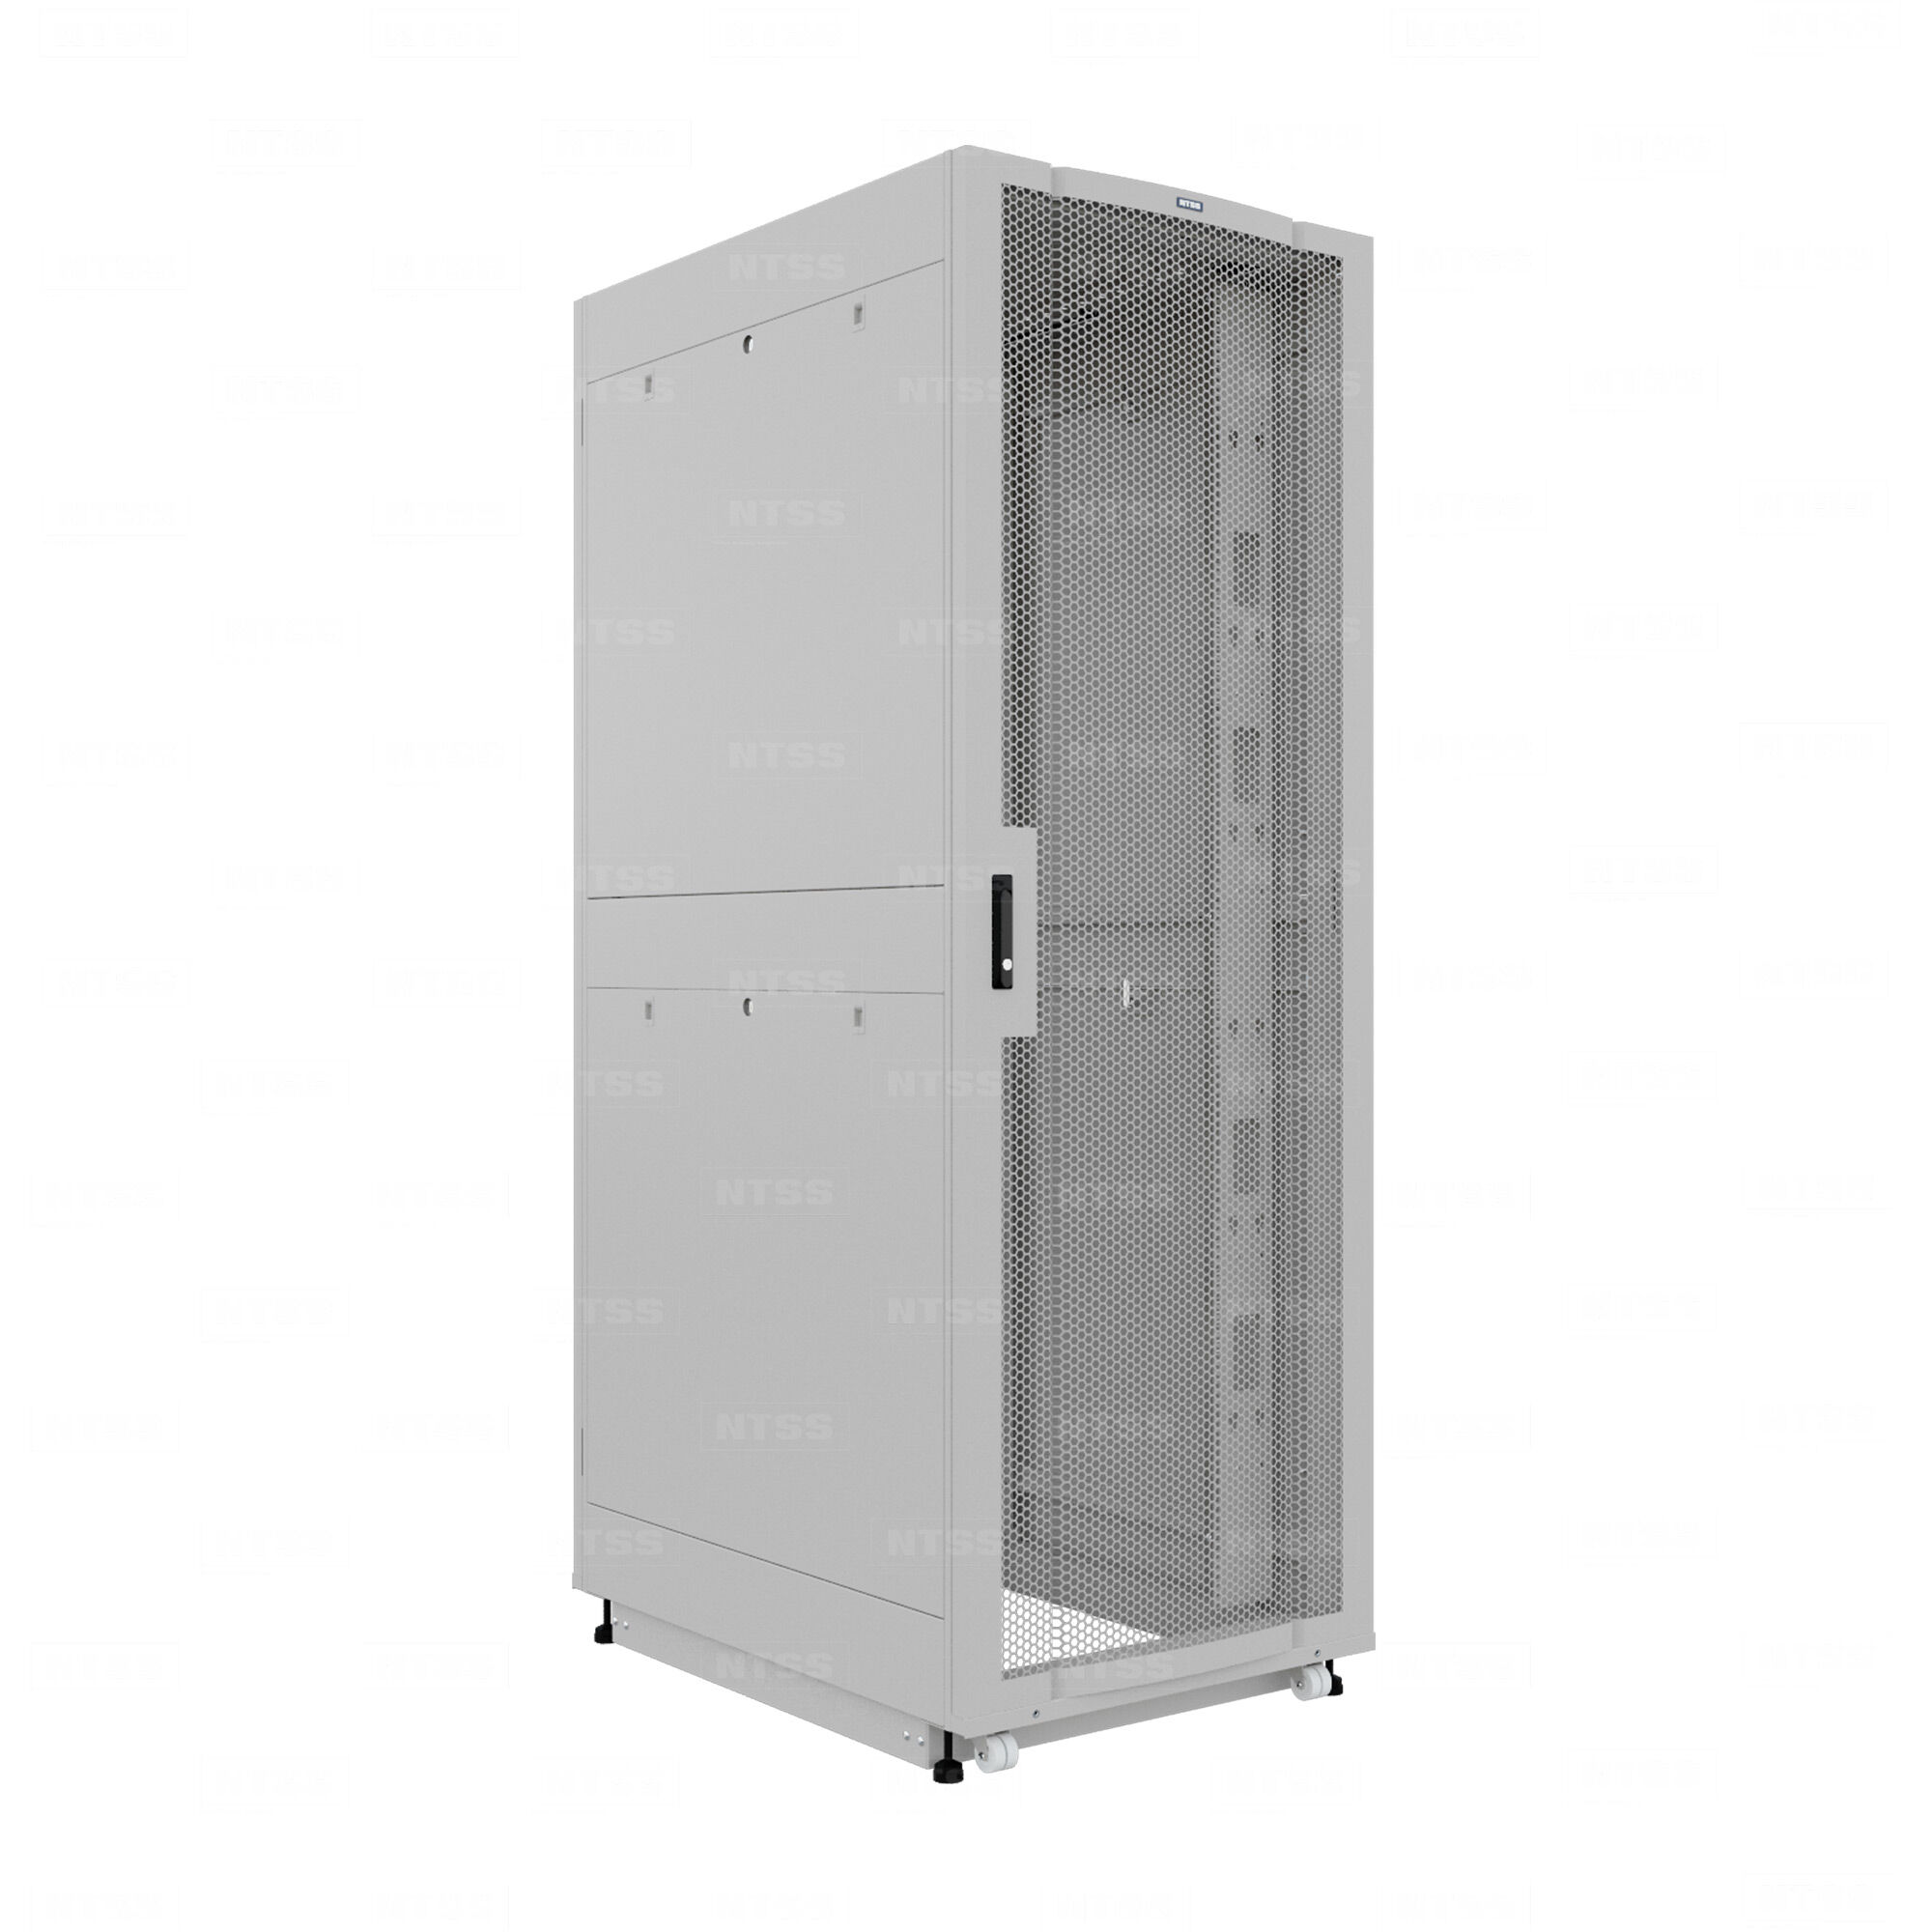 19" Напольный серверный шкаф NTSS ПРОЦОД PC 45U 800х1070 мм, передняя дверь перфорация, задняя дверь распашная двойная п